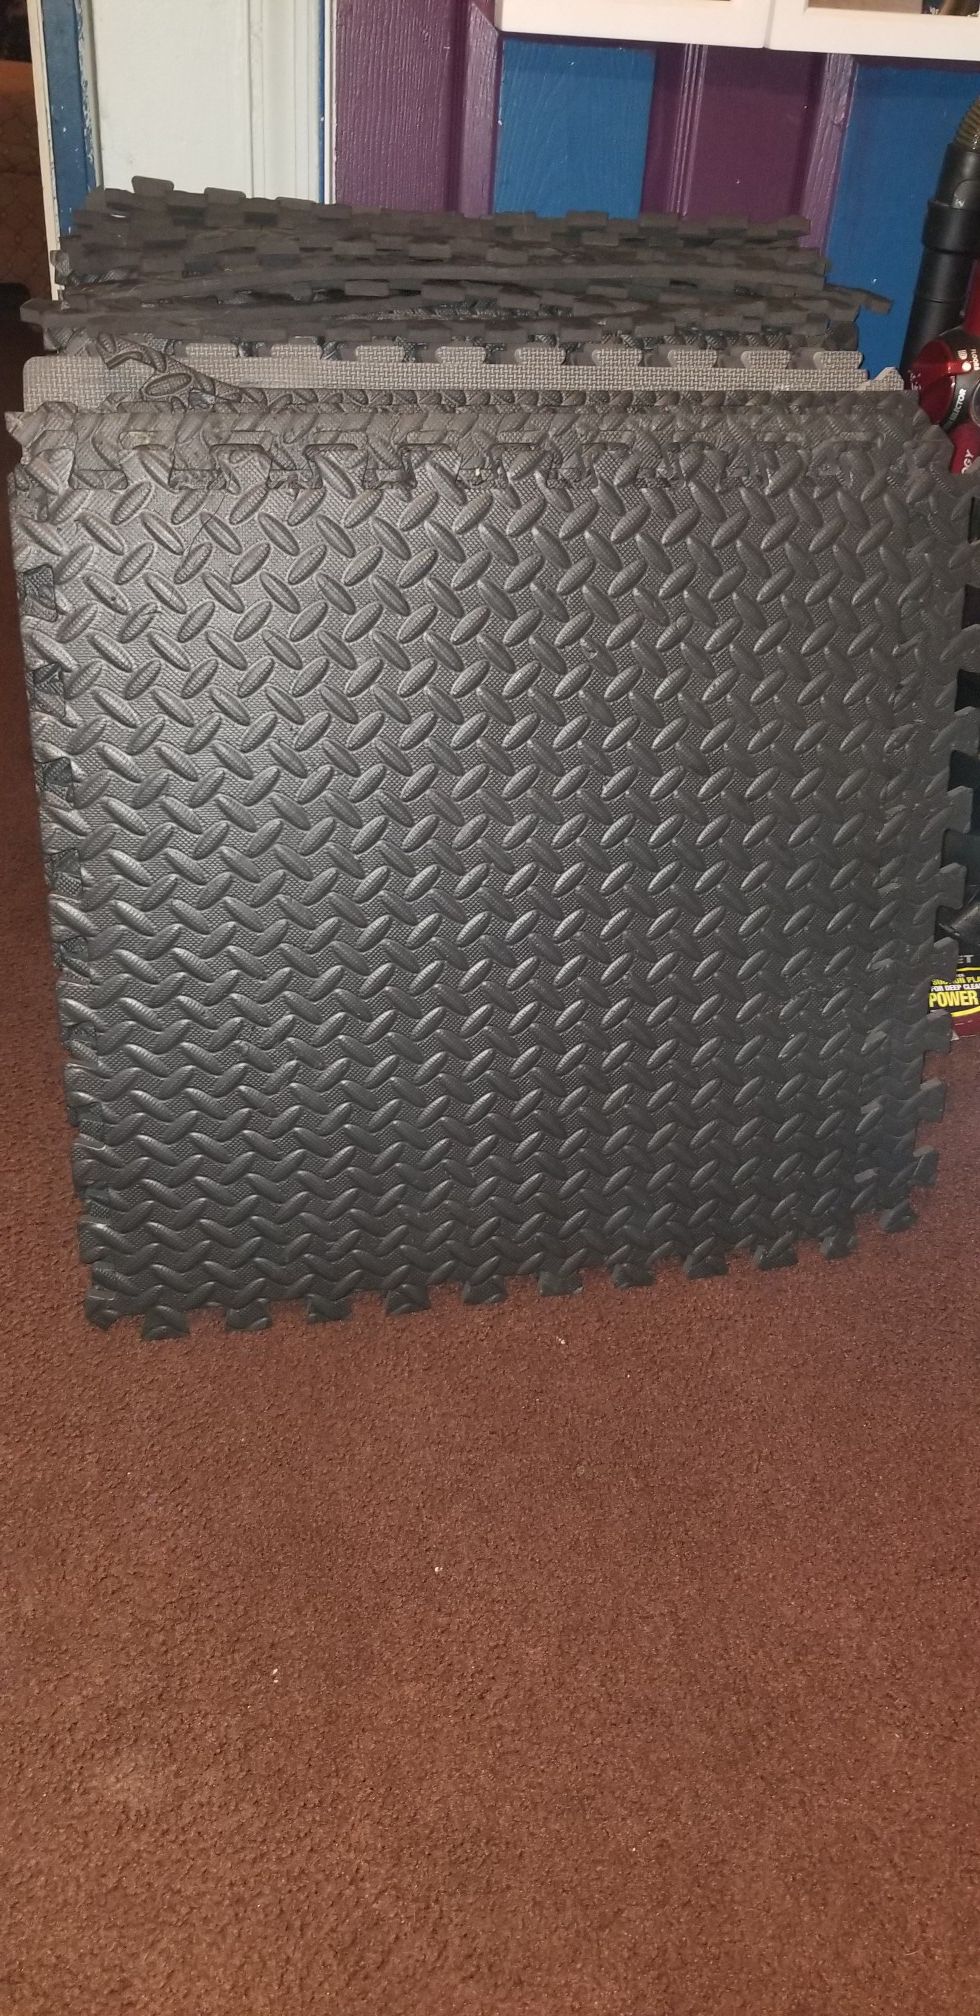 foam floor mats (24x24)